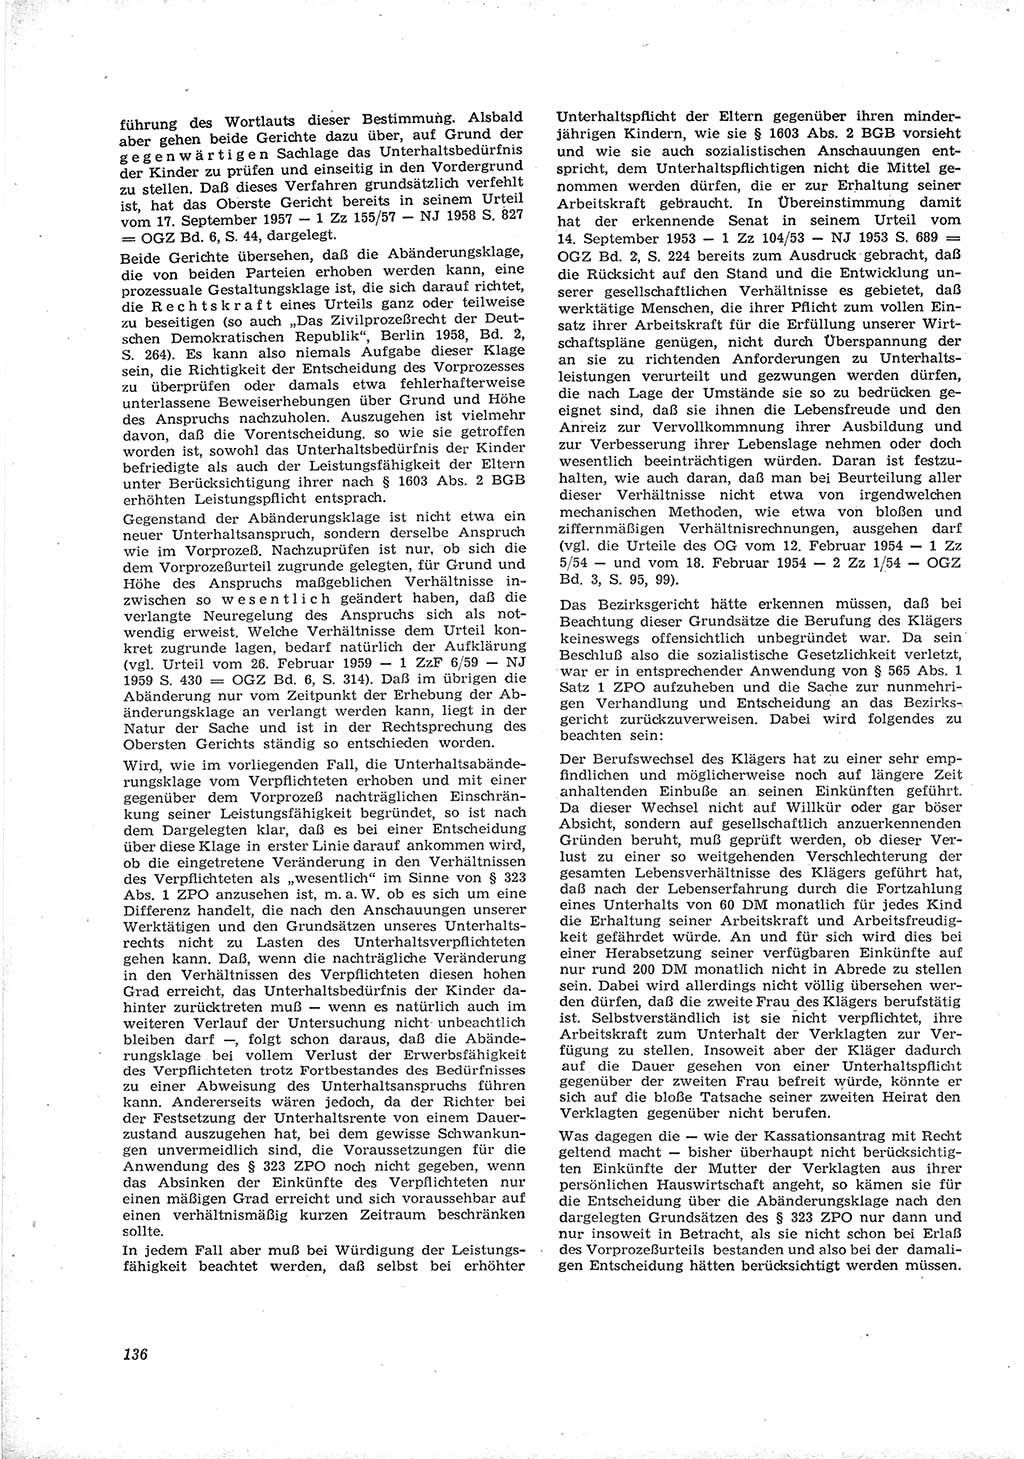 Neue Justiz (NJ), Zeitschrift für Recht und Rechtswissenschaft [Deutsche Demokratische Republik (DDR)], 16. Jahrgang 1962, Seite 136 (NJ DDR 1962, S. 136)